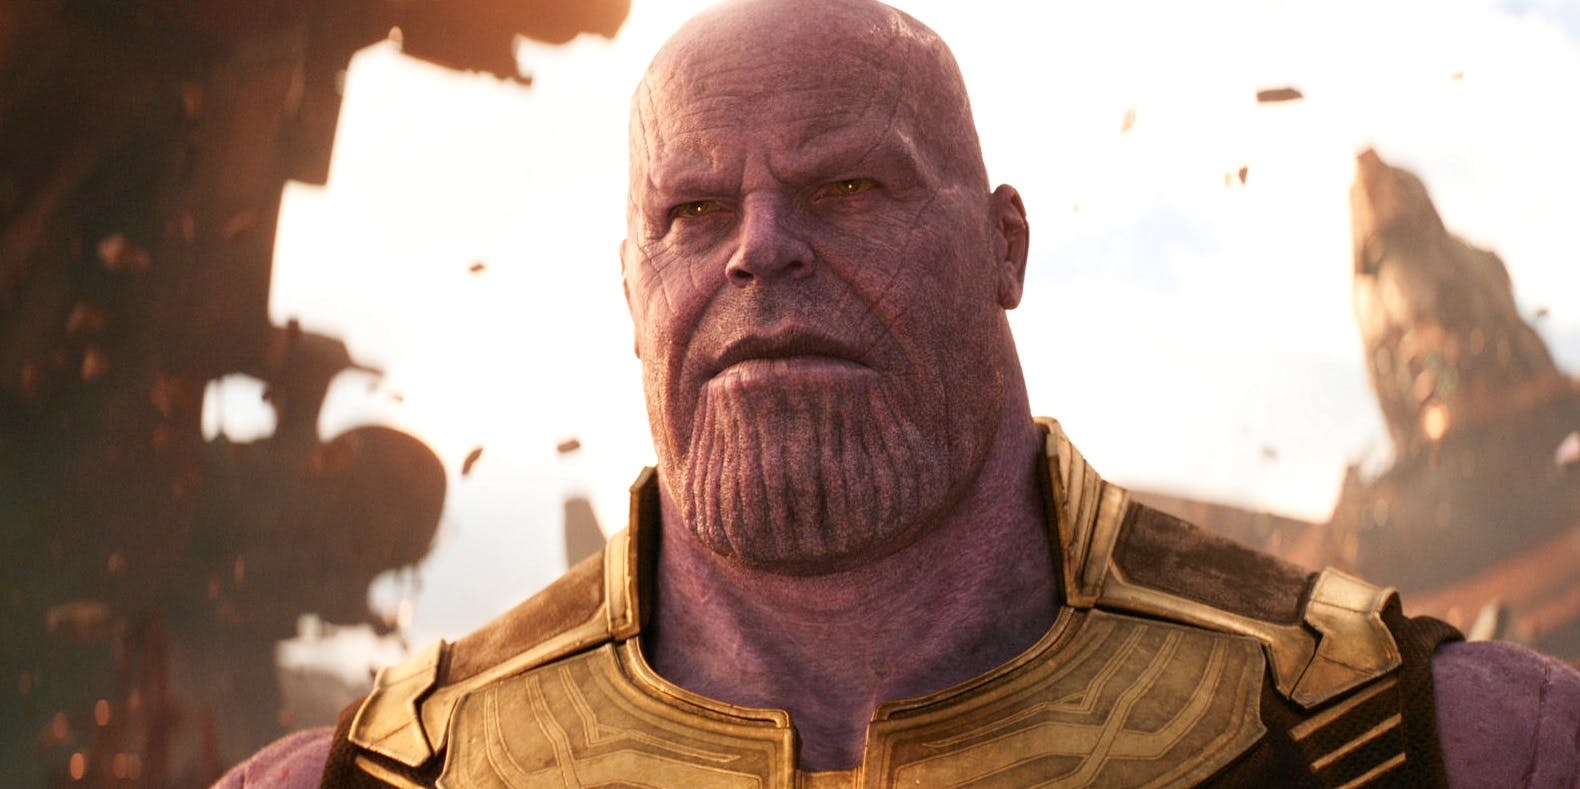 แท้จริงแล้ว Thanos เพลิดเพลินเมื่อเห็นตัวเองถูก Avengers ฆ่าใน Endgame